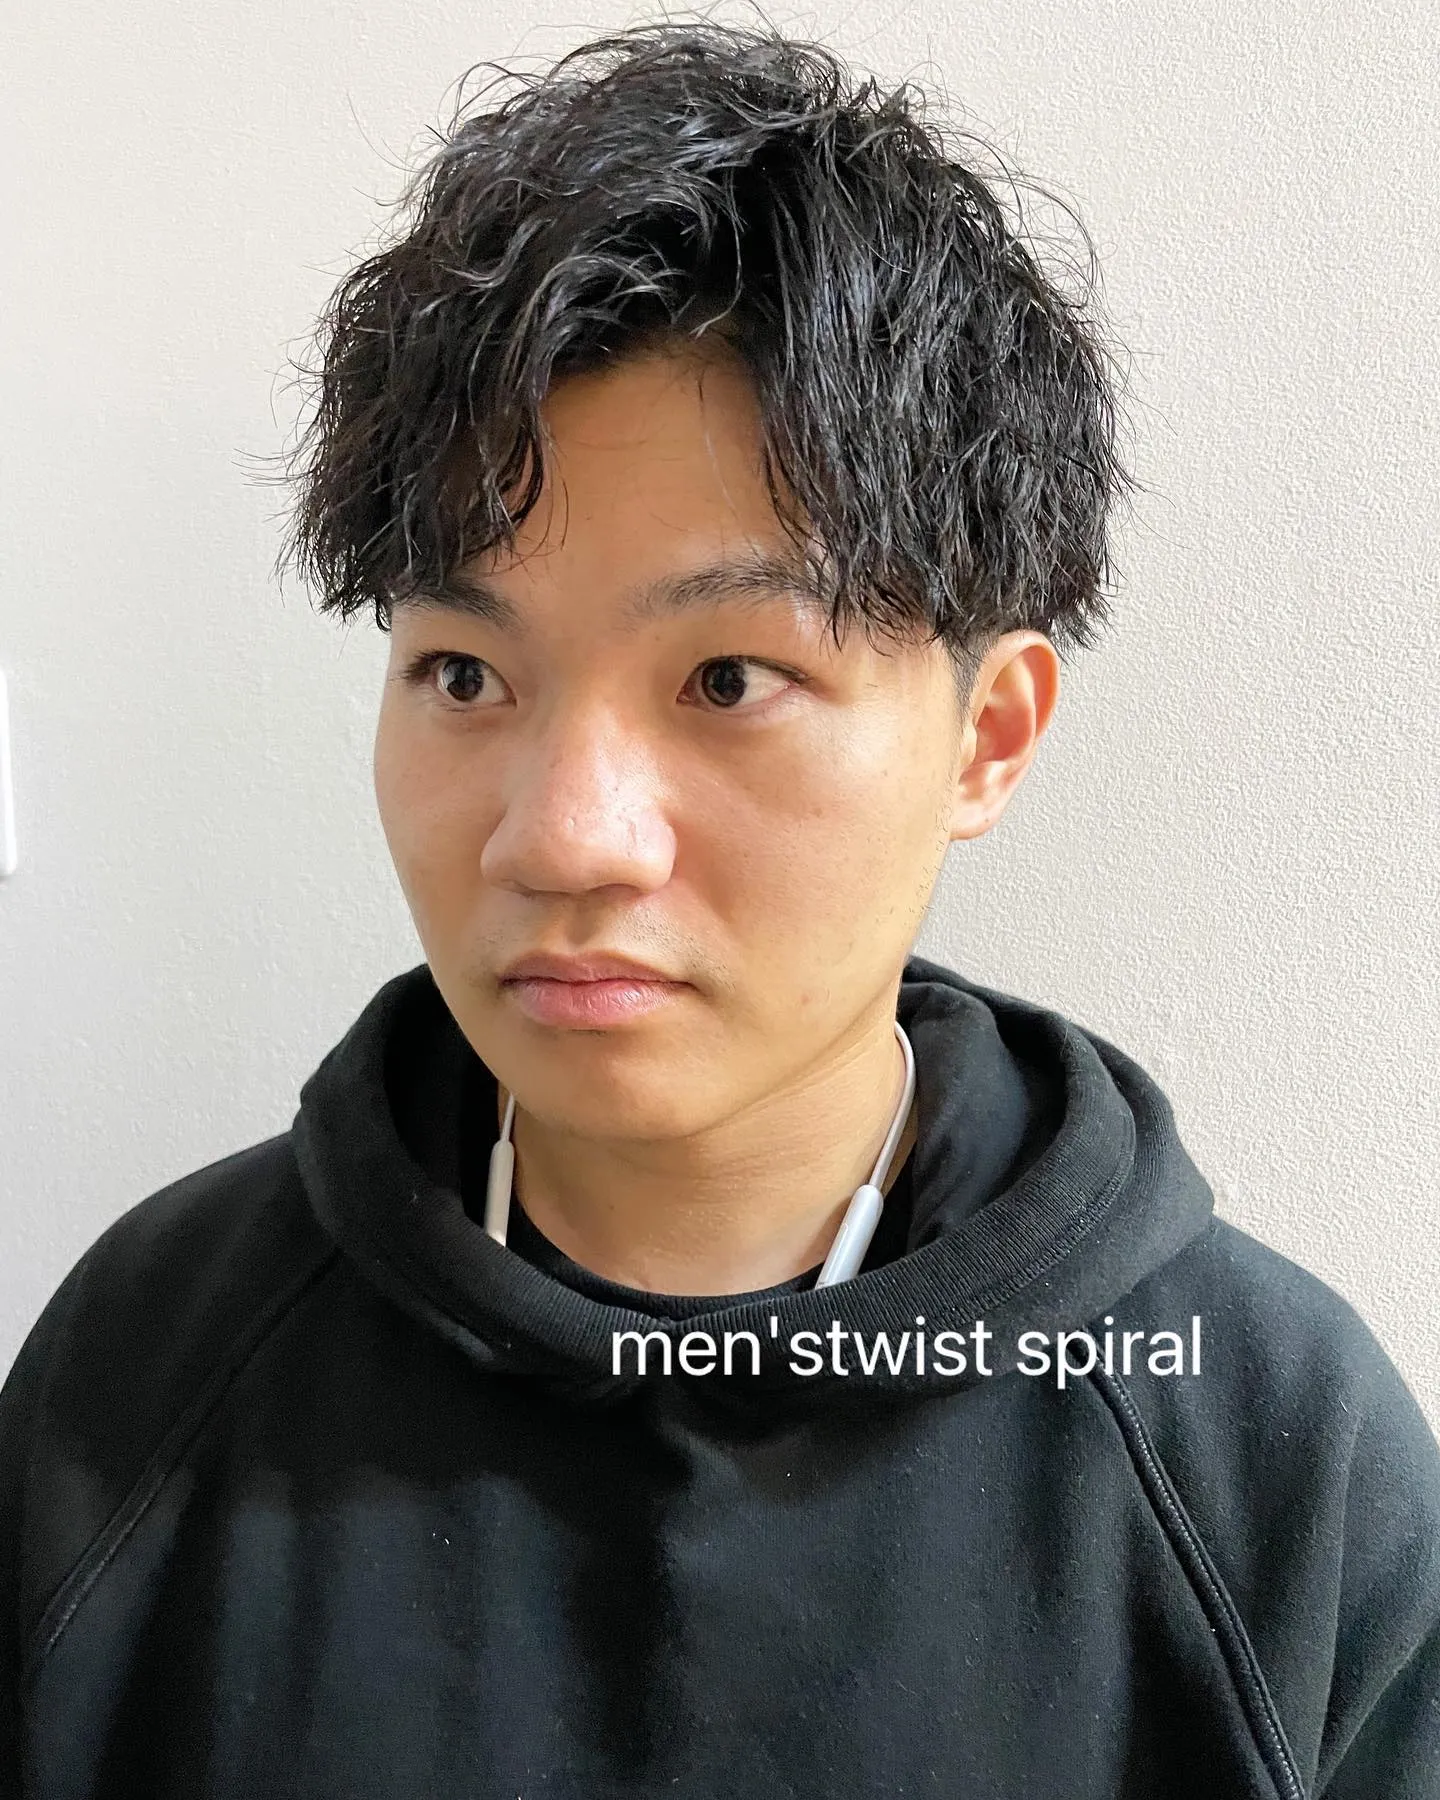 𝙔𝙊𝙇𝙊 𝙎𝙏𝙔𝙇𝙀〜men'stwist spiral〜